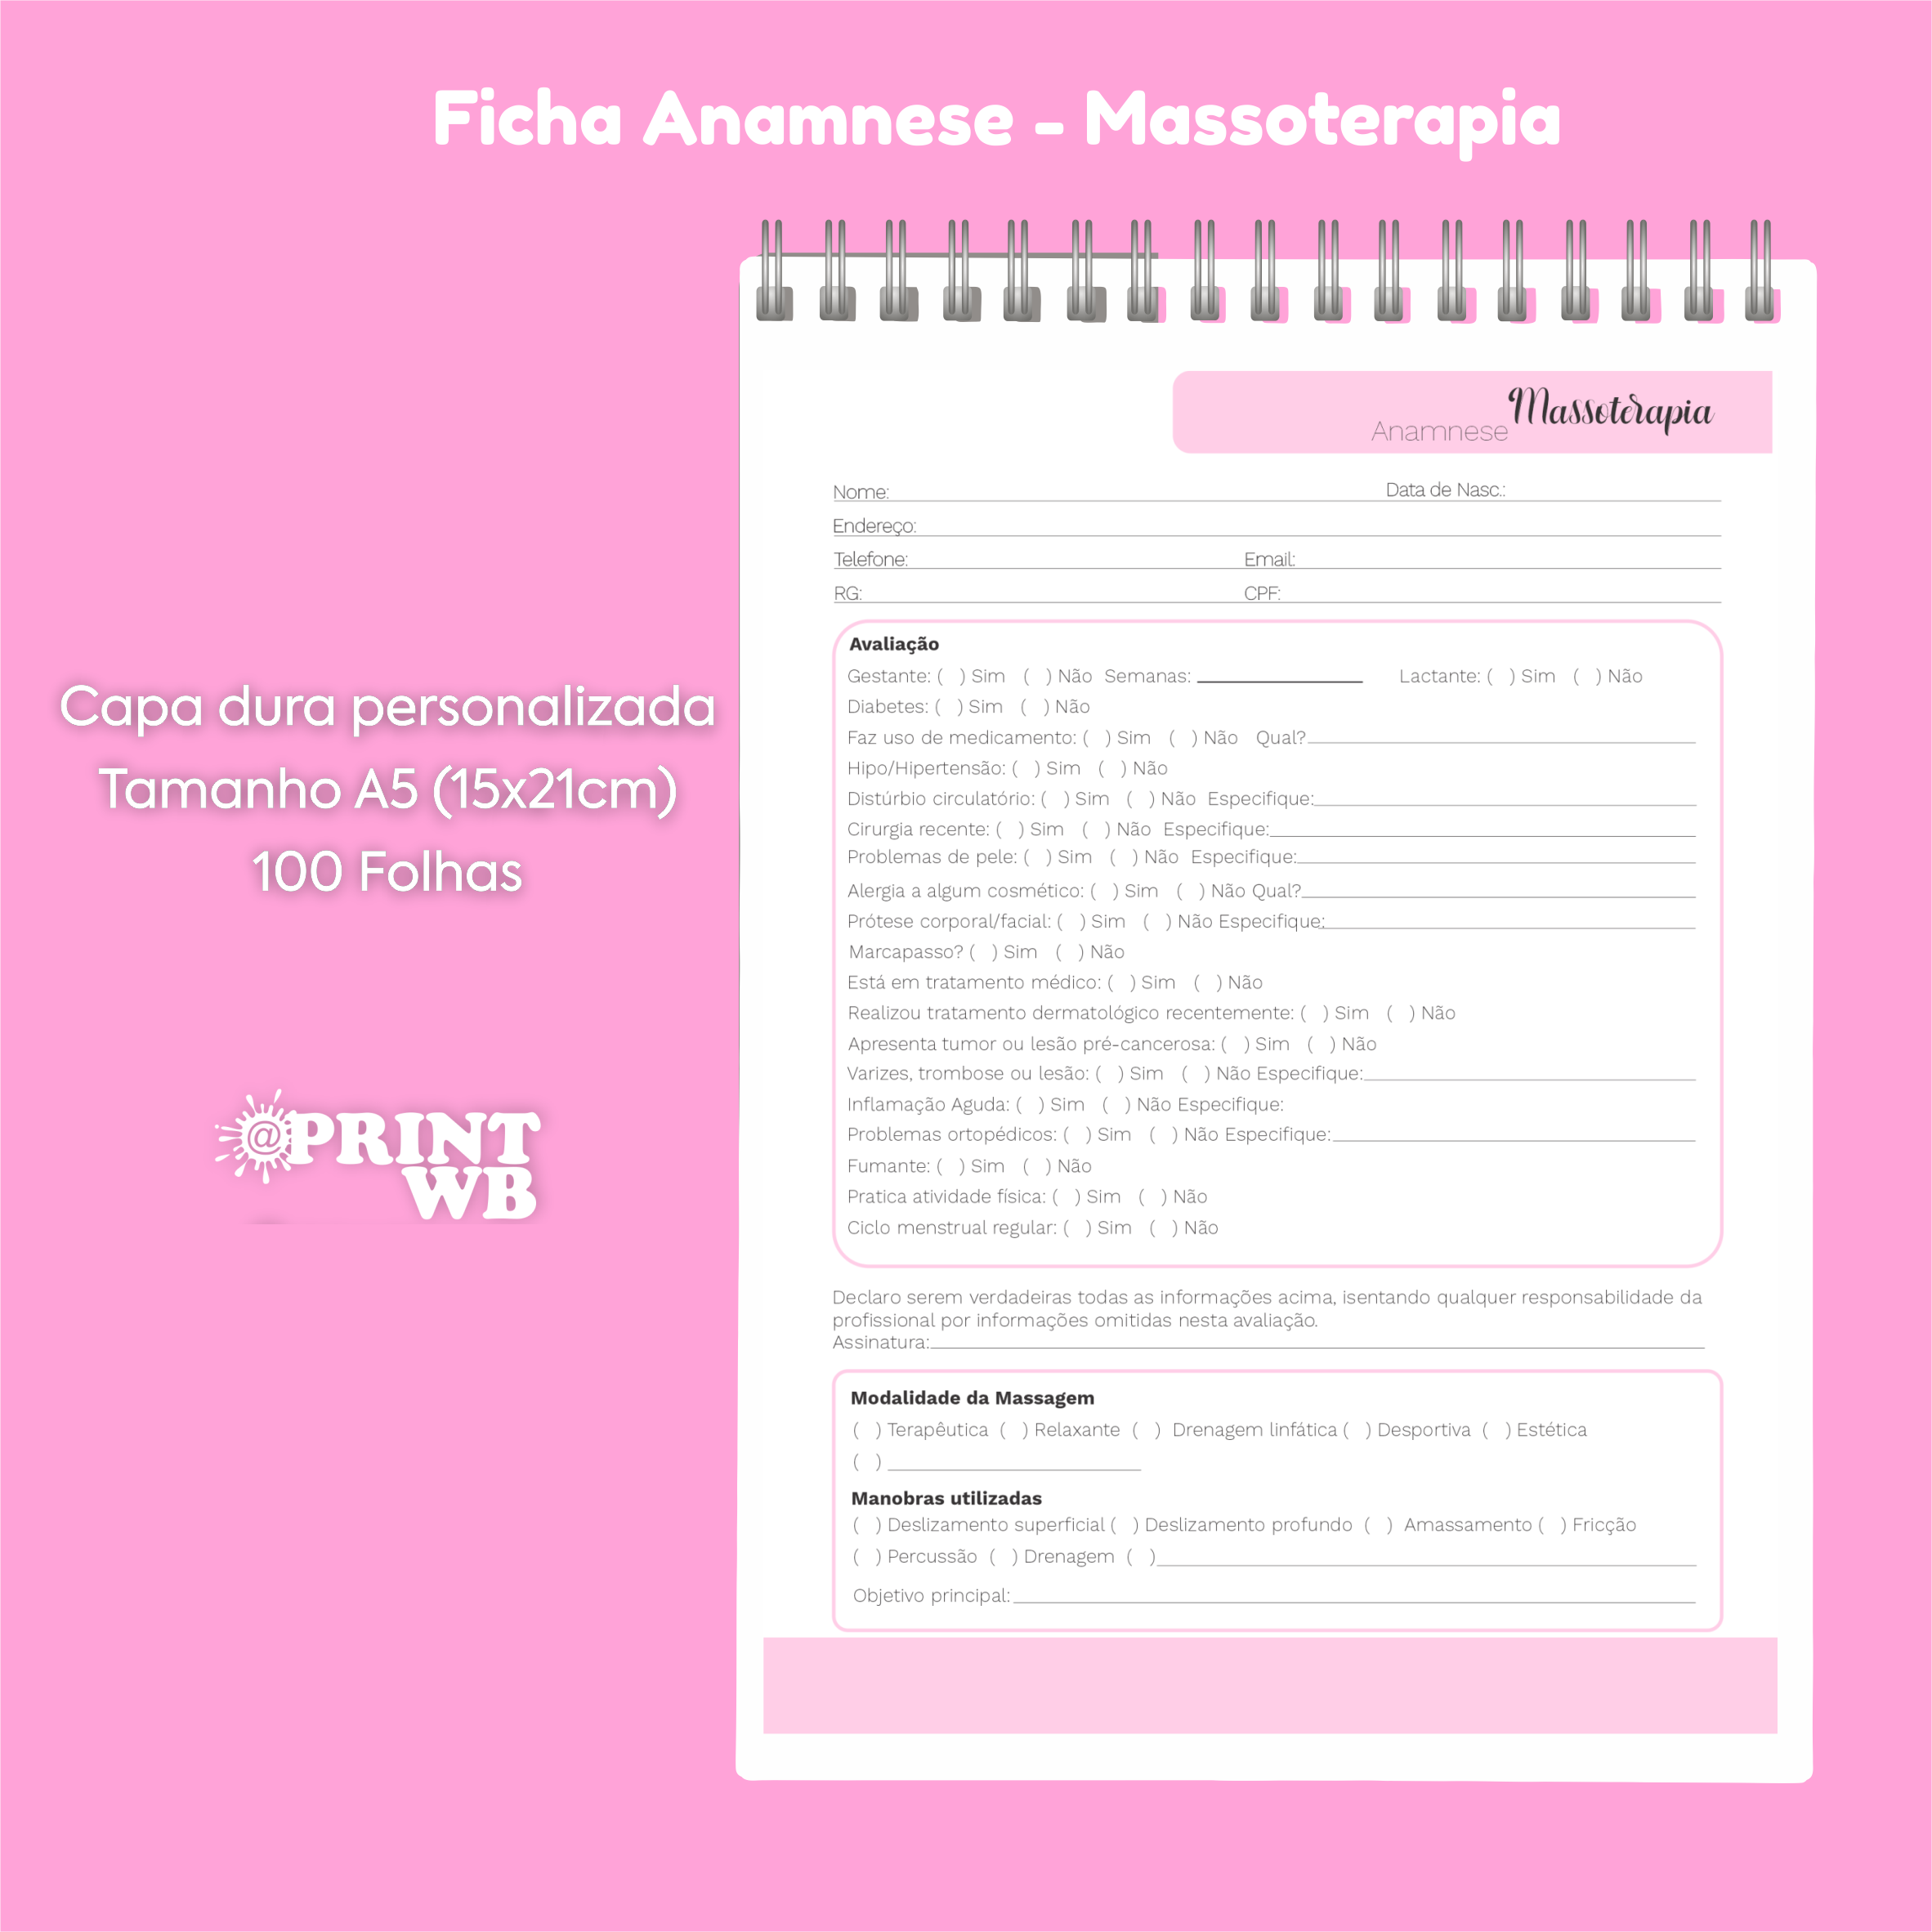 Ficha de Anamnese - Massoterapia